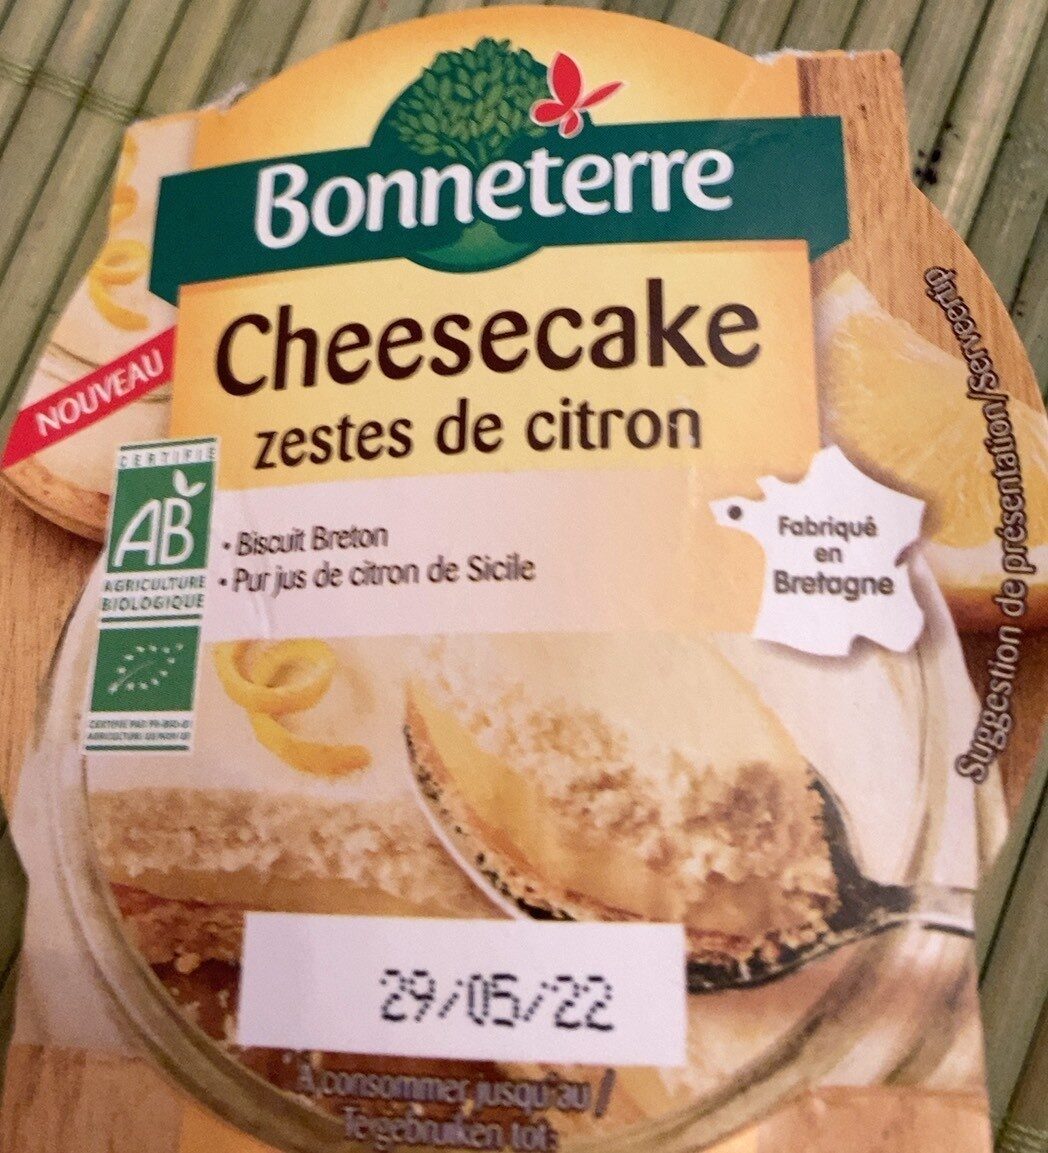 Cheesecake zestes de citron - Product - fr